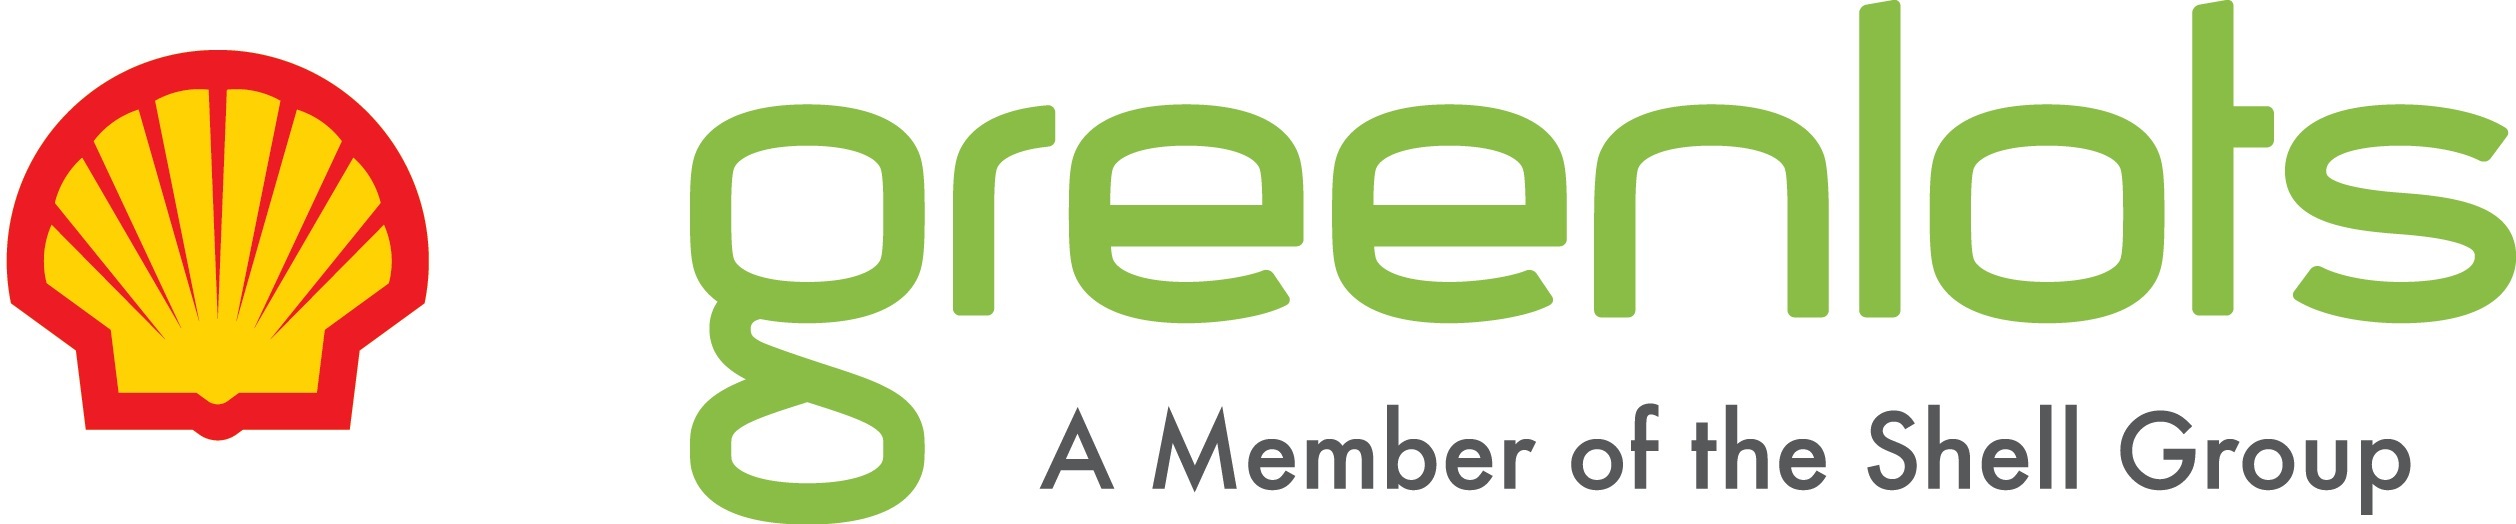 greenlots___shell_group_logo